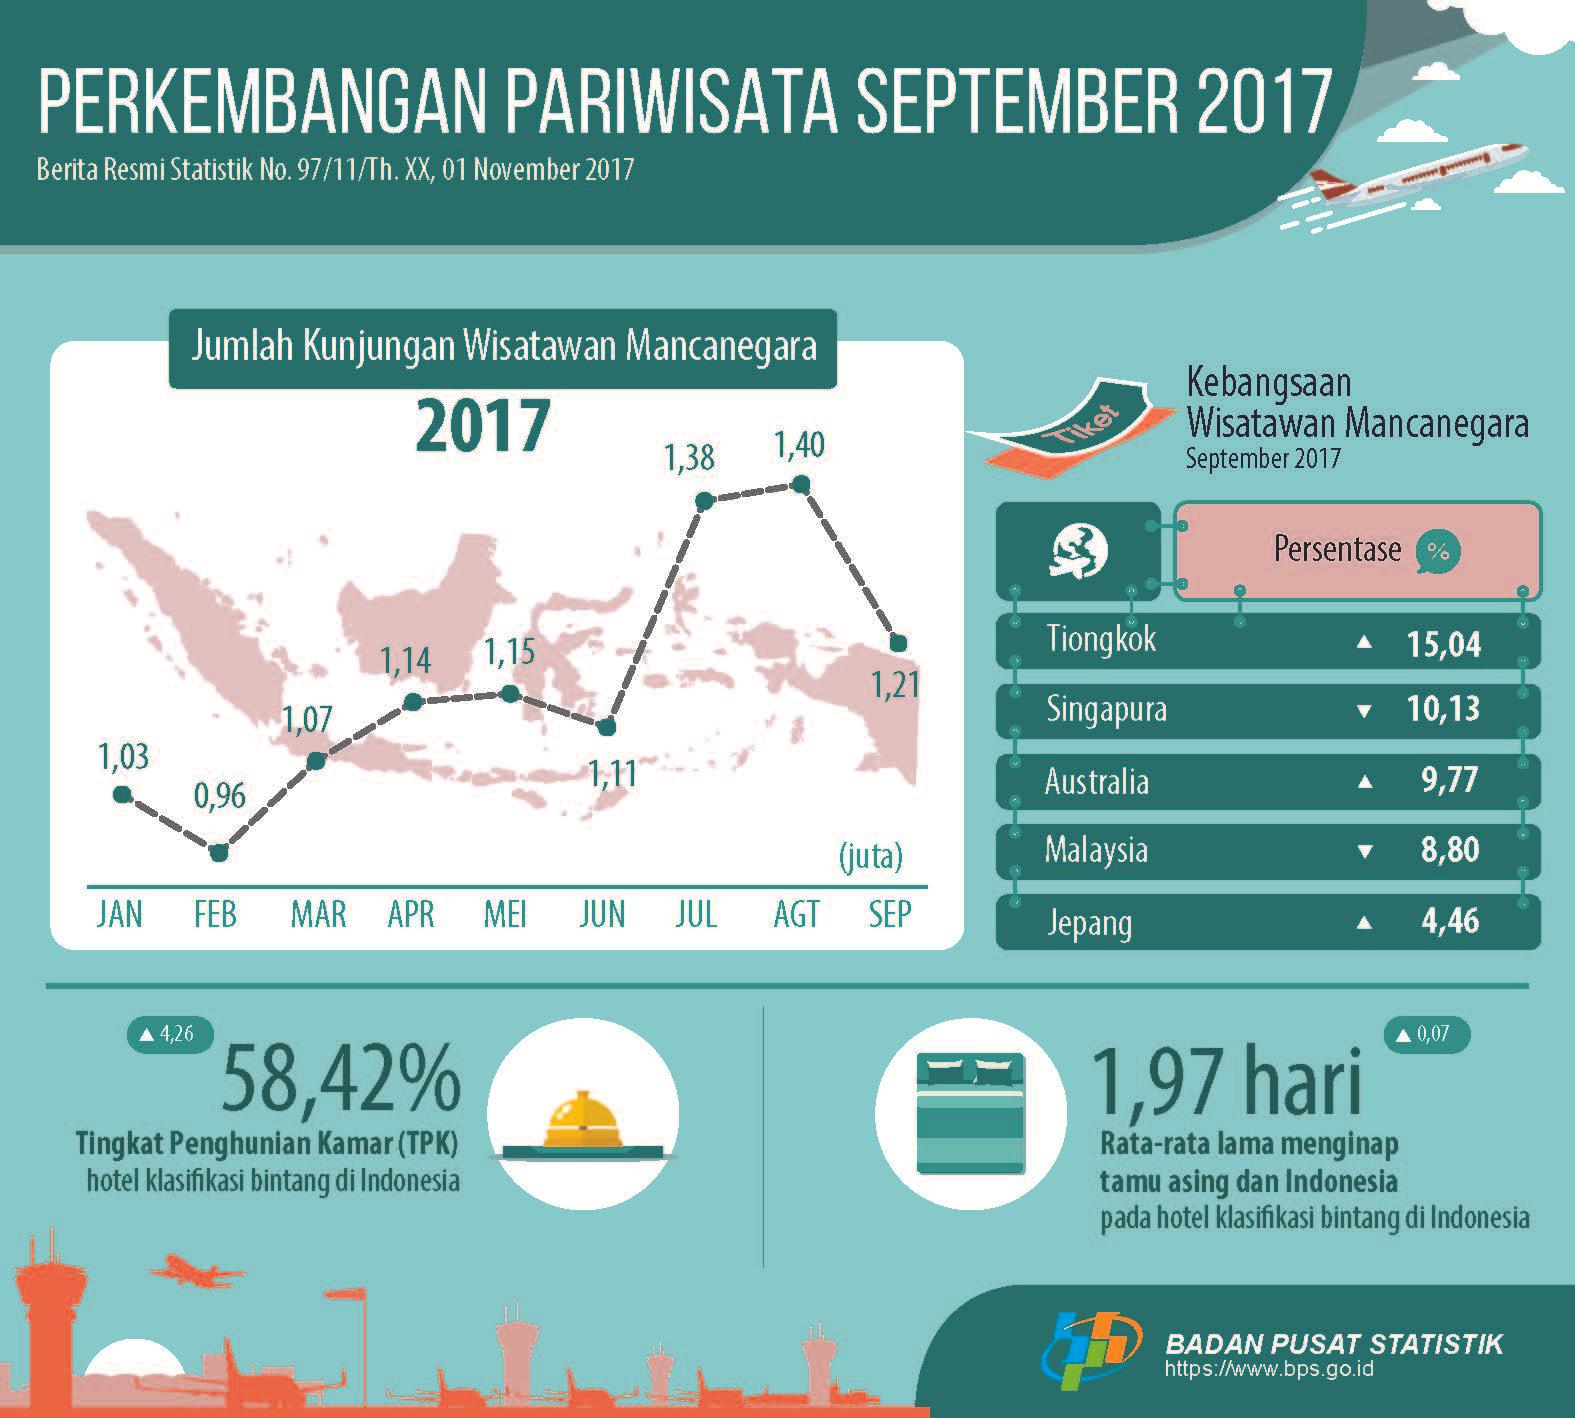 Jumlah kunjungan wisman ke Indonesia September 2017 mencapai 1,21 juta kunjungan. 